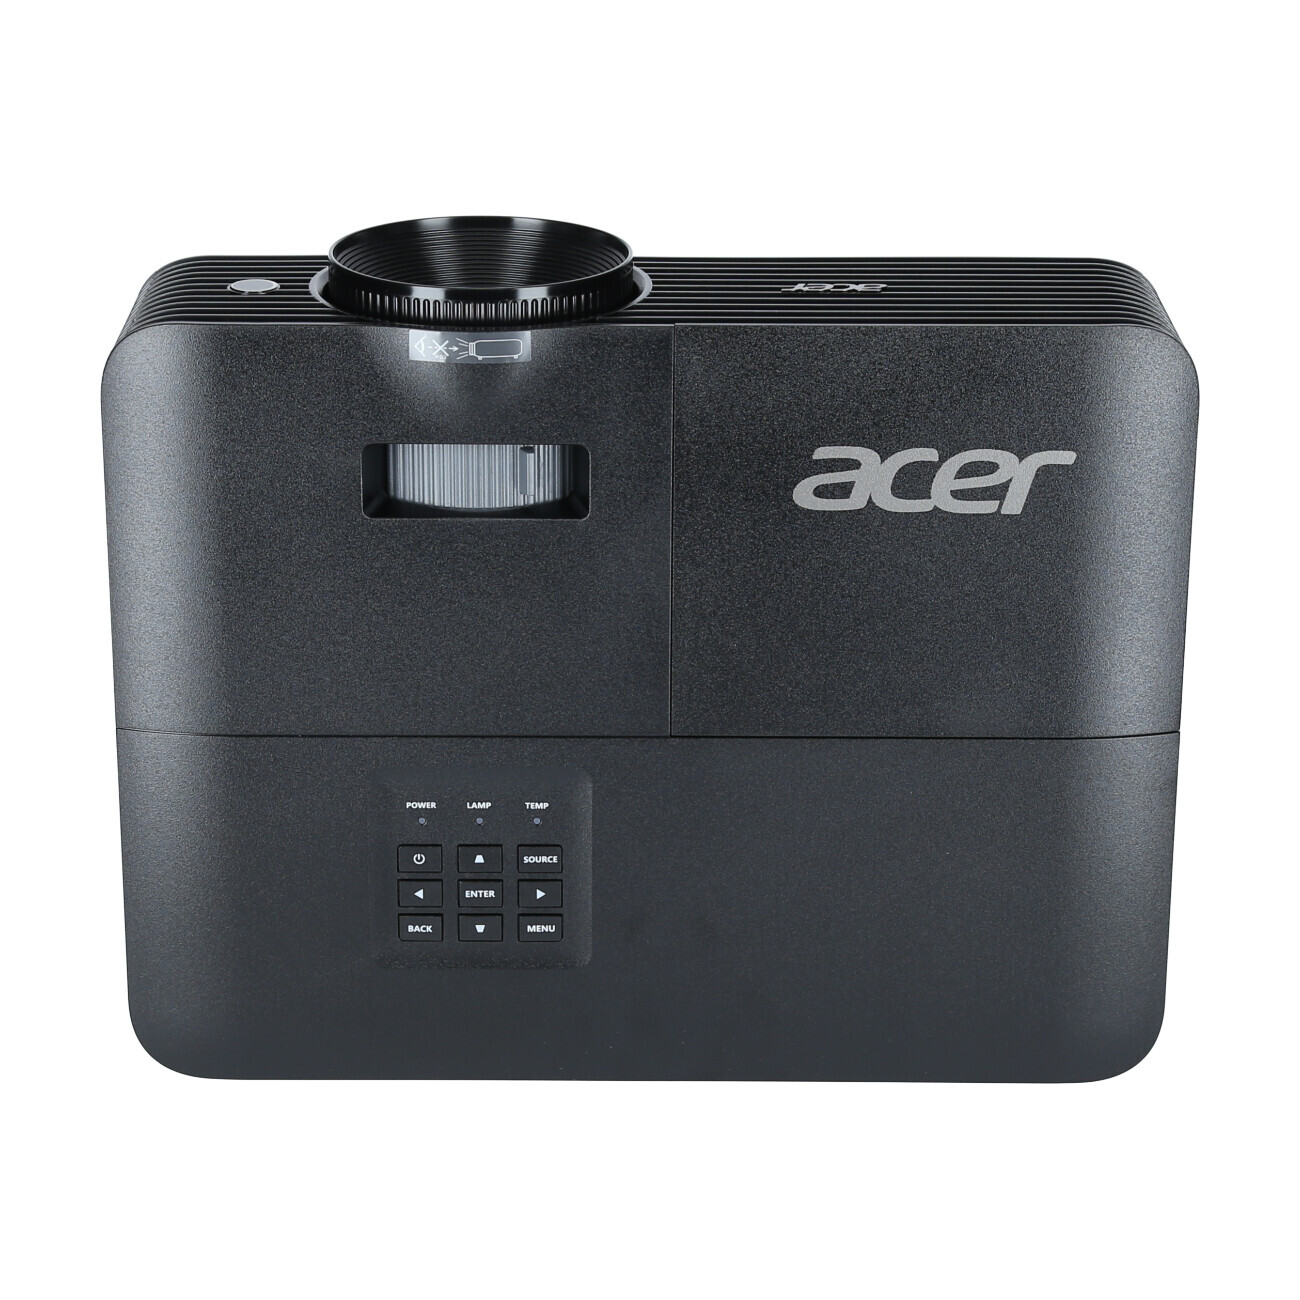 Vorschau: Acer X1326AWH Businessbeamer mit 4000 Lumen und WXGA Auflösung - Demo